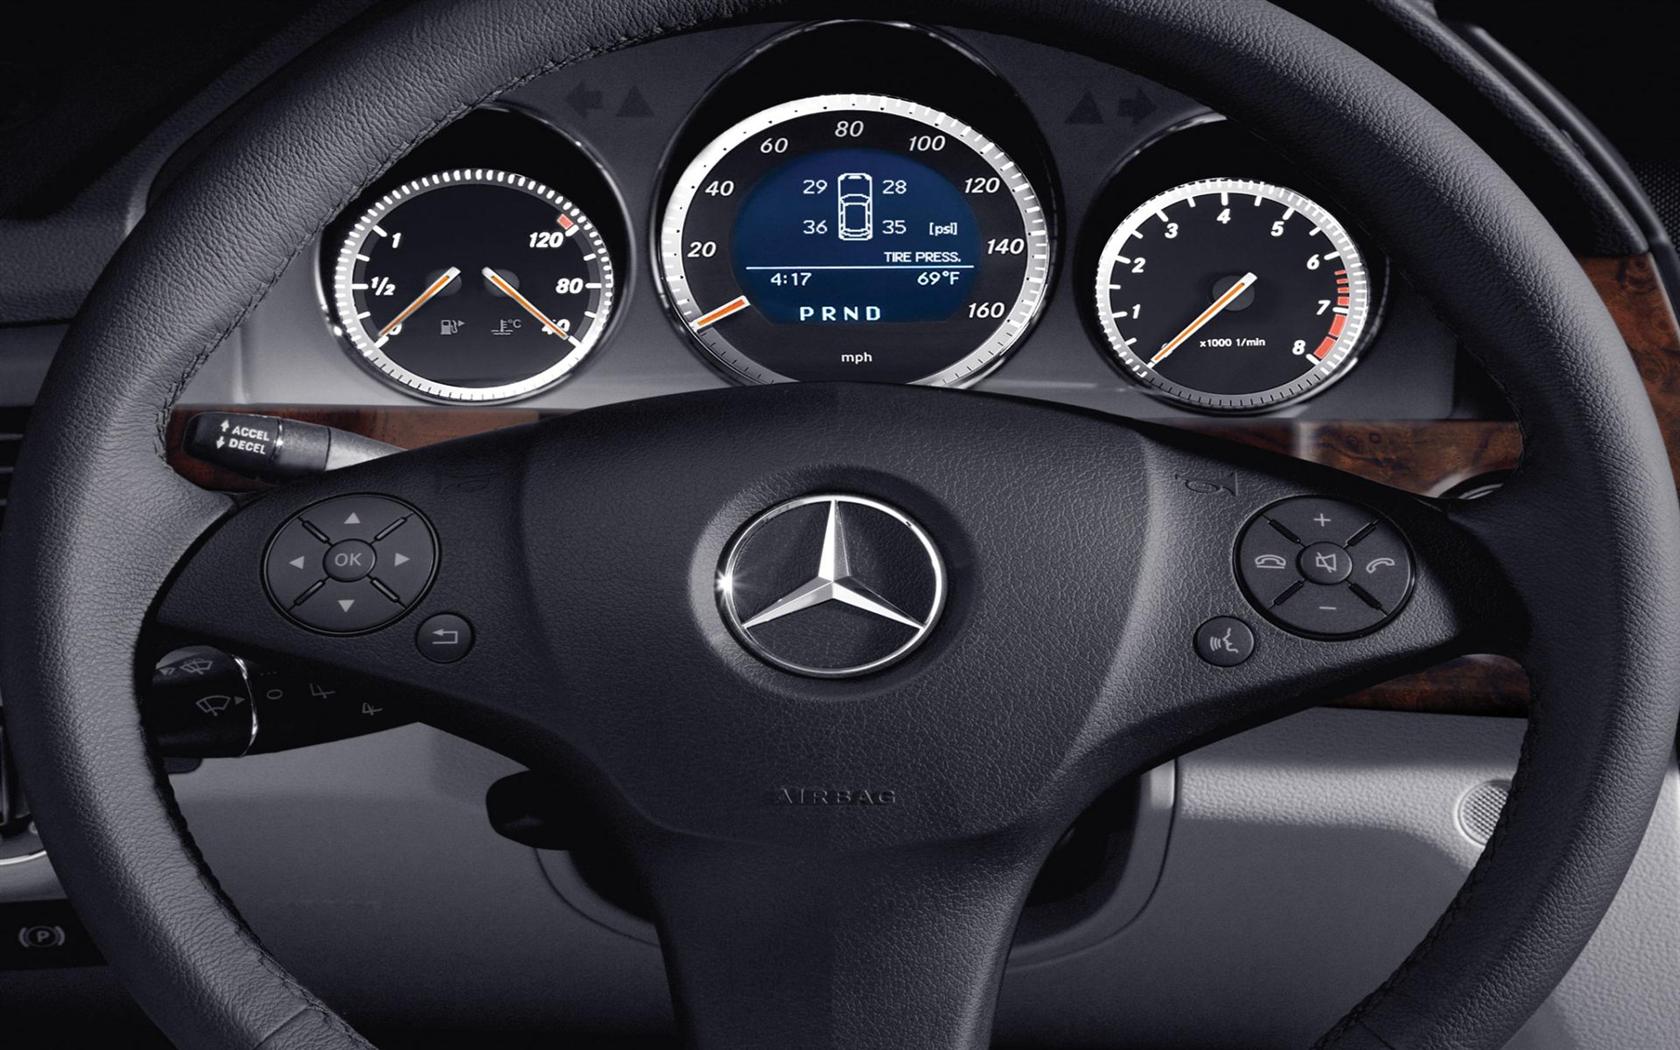 2012 Mercedes-Benz GLK-Class